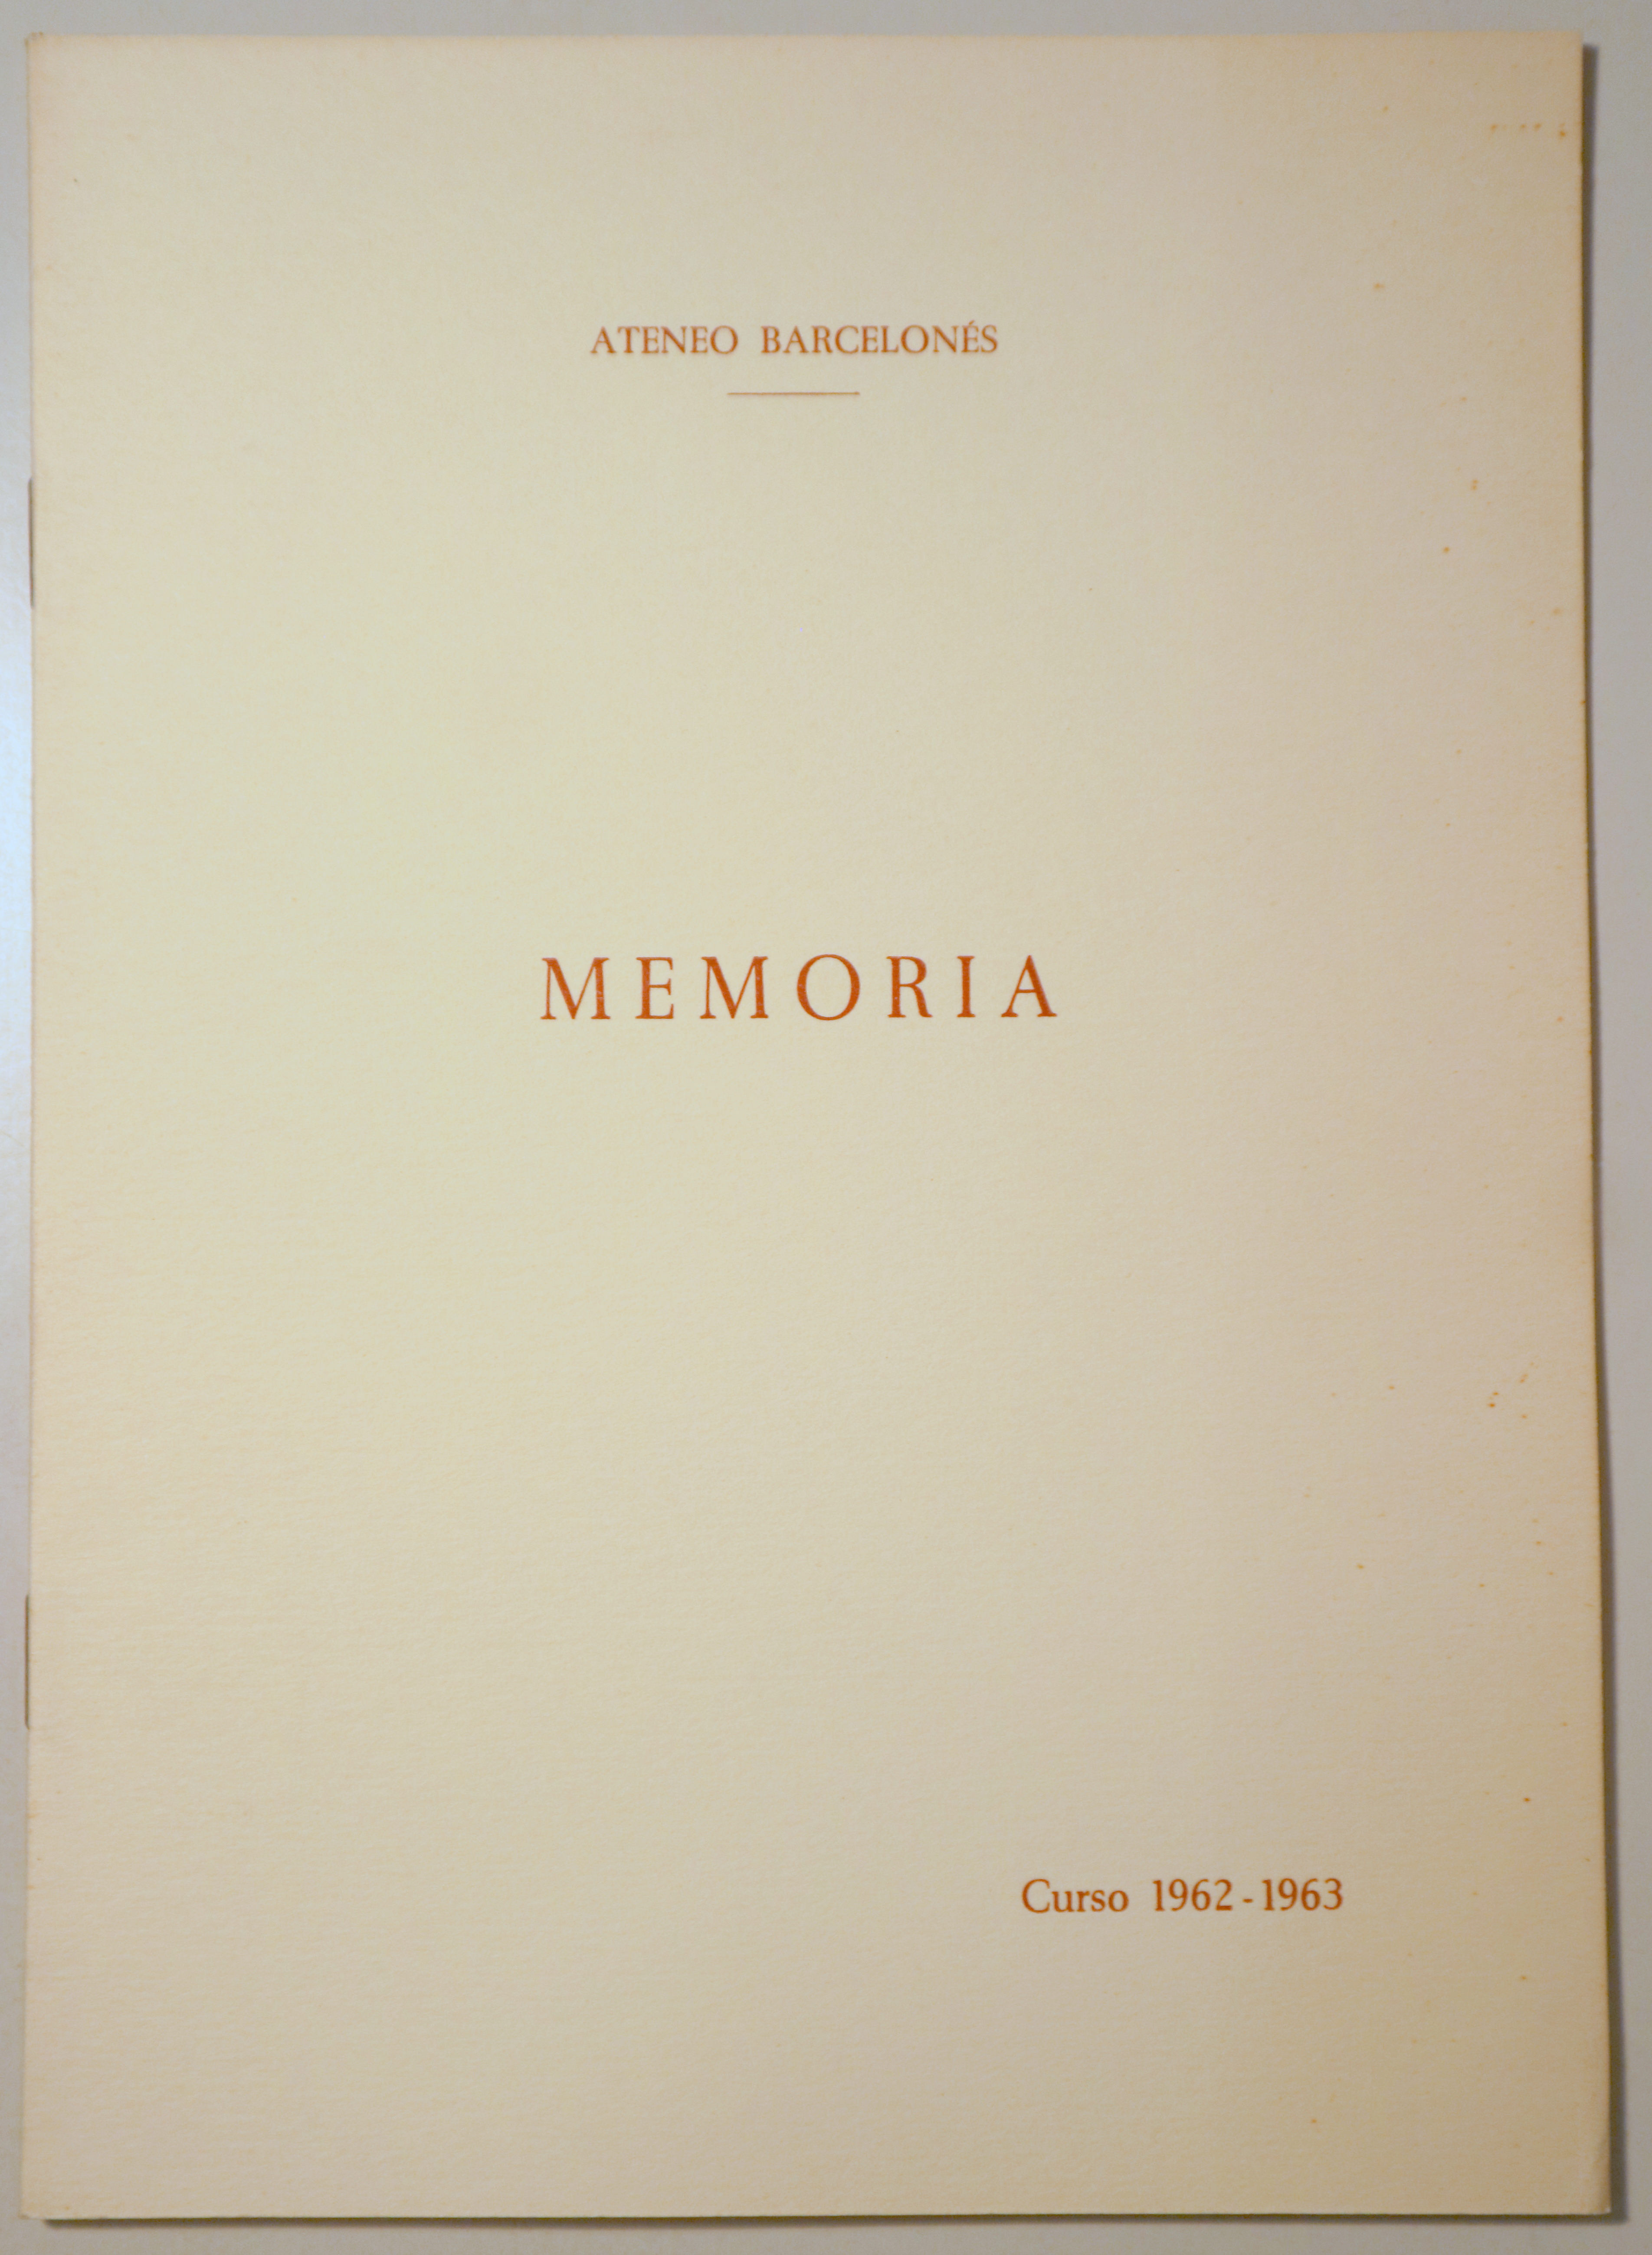 ATENEO BARCELONÉS. MEMORIA. Curso 1962-63 - Barcelona 1963